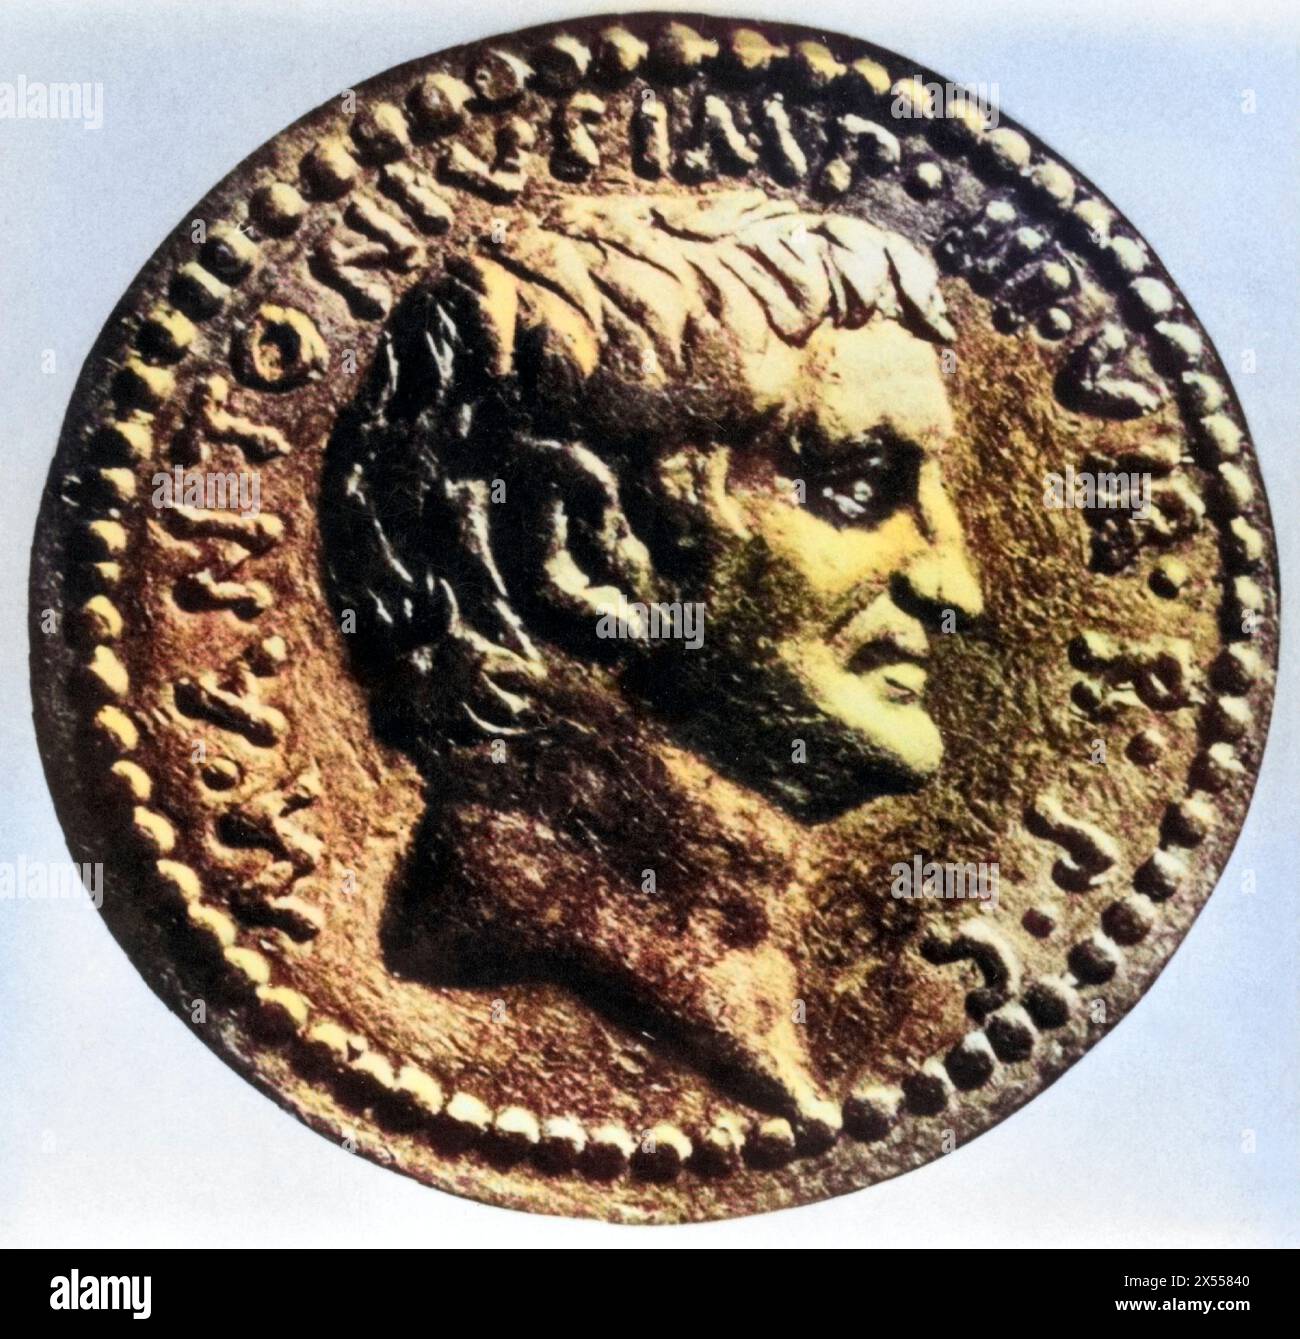 Antonius, Marcus, vers 82 - 30 av. J.-C., politicien et général romain, portrait, vue de côté, pièce, ADDITIONAL-RIGHTS-CLEARANCE-INFO-NOT-AVAILABLE Banque D'Images